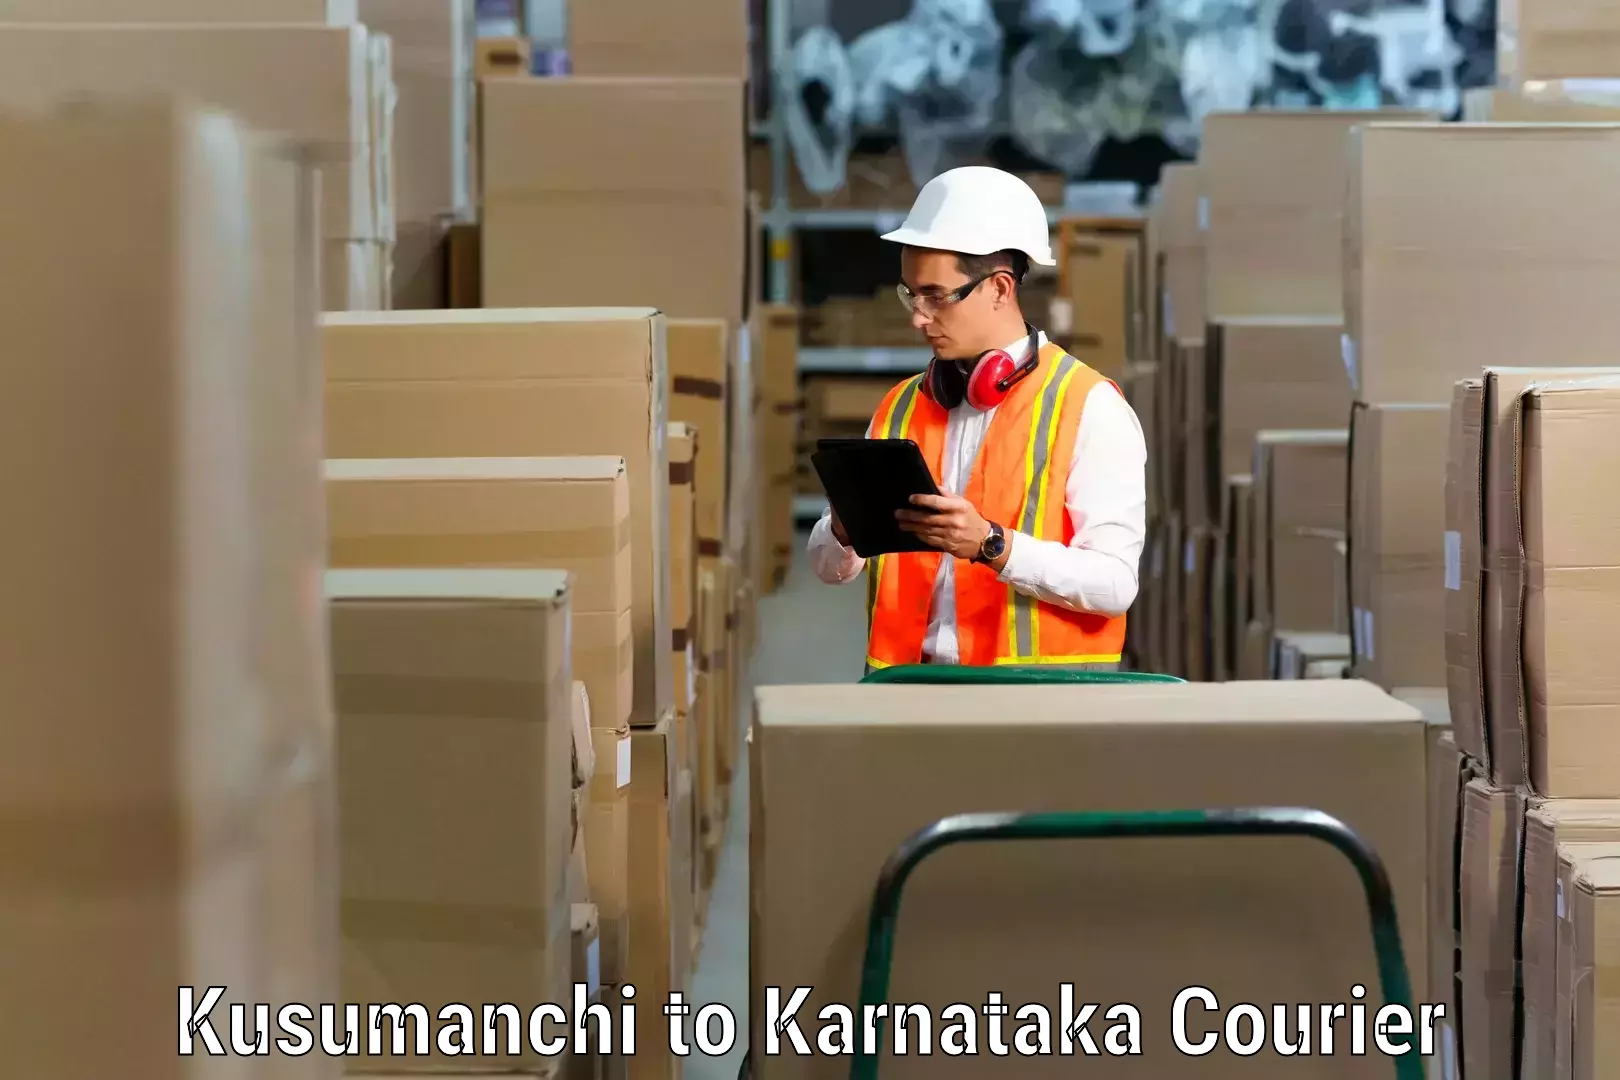 Professional packing services in Kusumanchi to Ballari